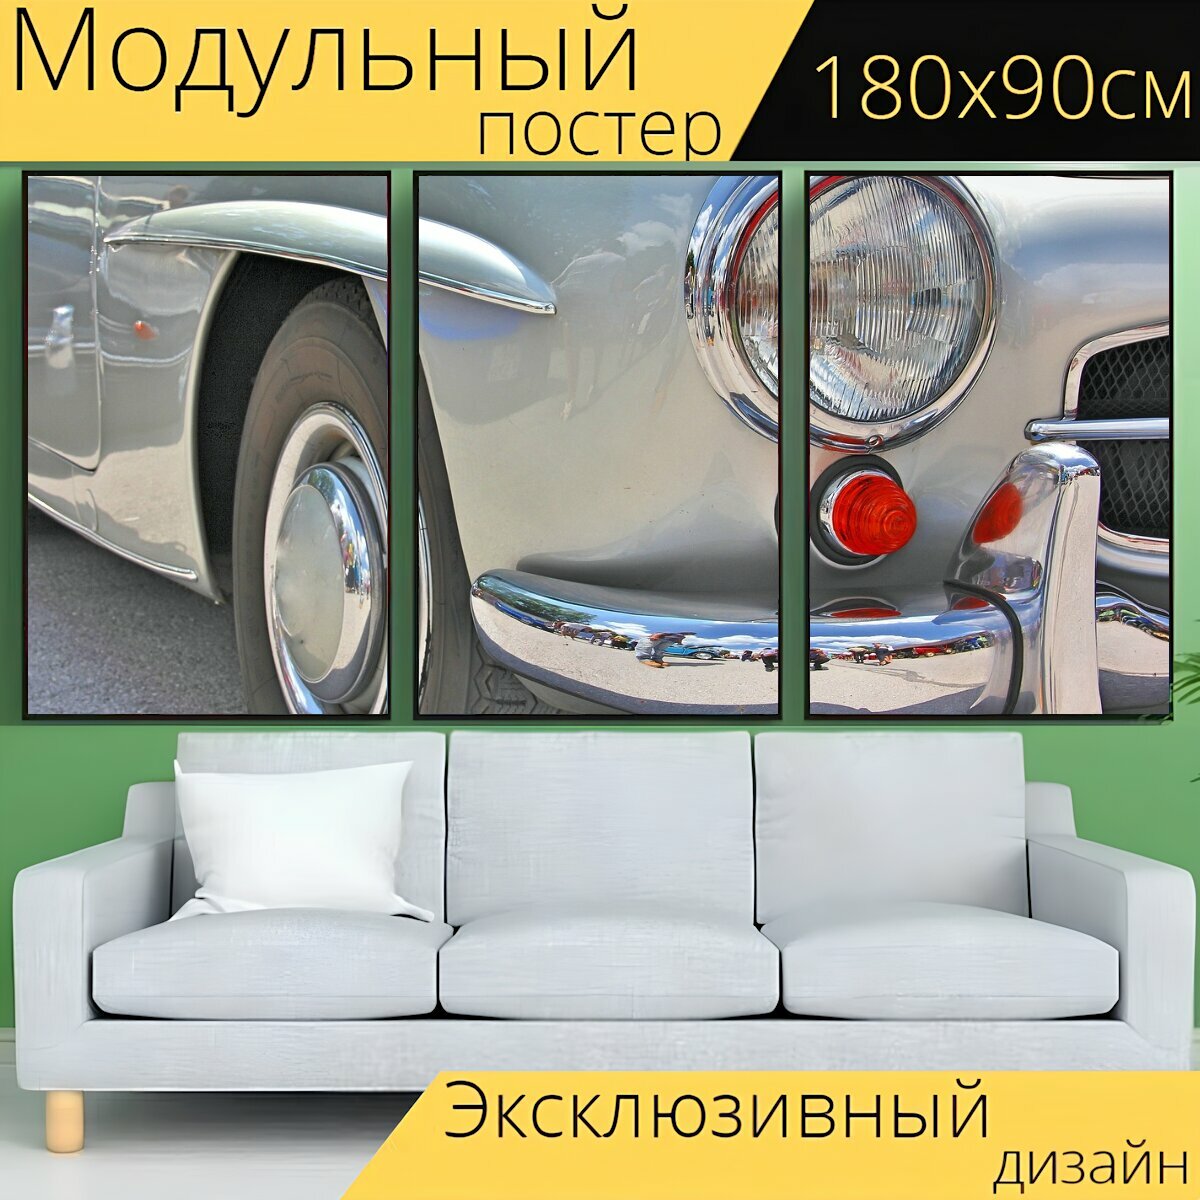 Модульный постер "Автомобиль, транспортное средство, фары" 180 x 90 см. для интерьера